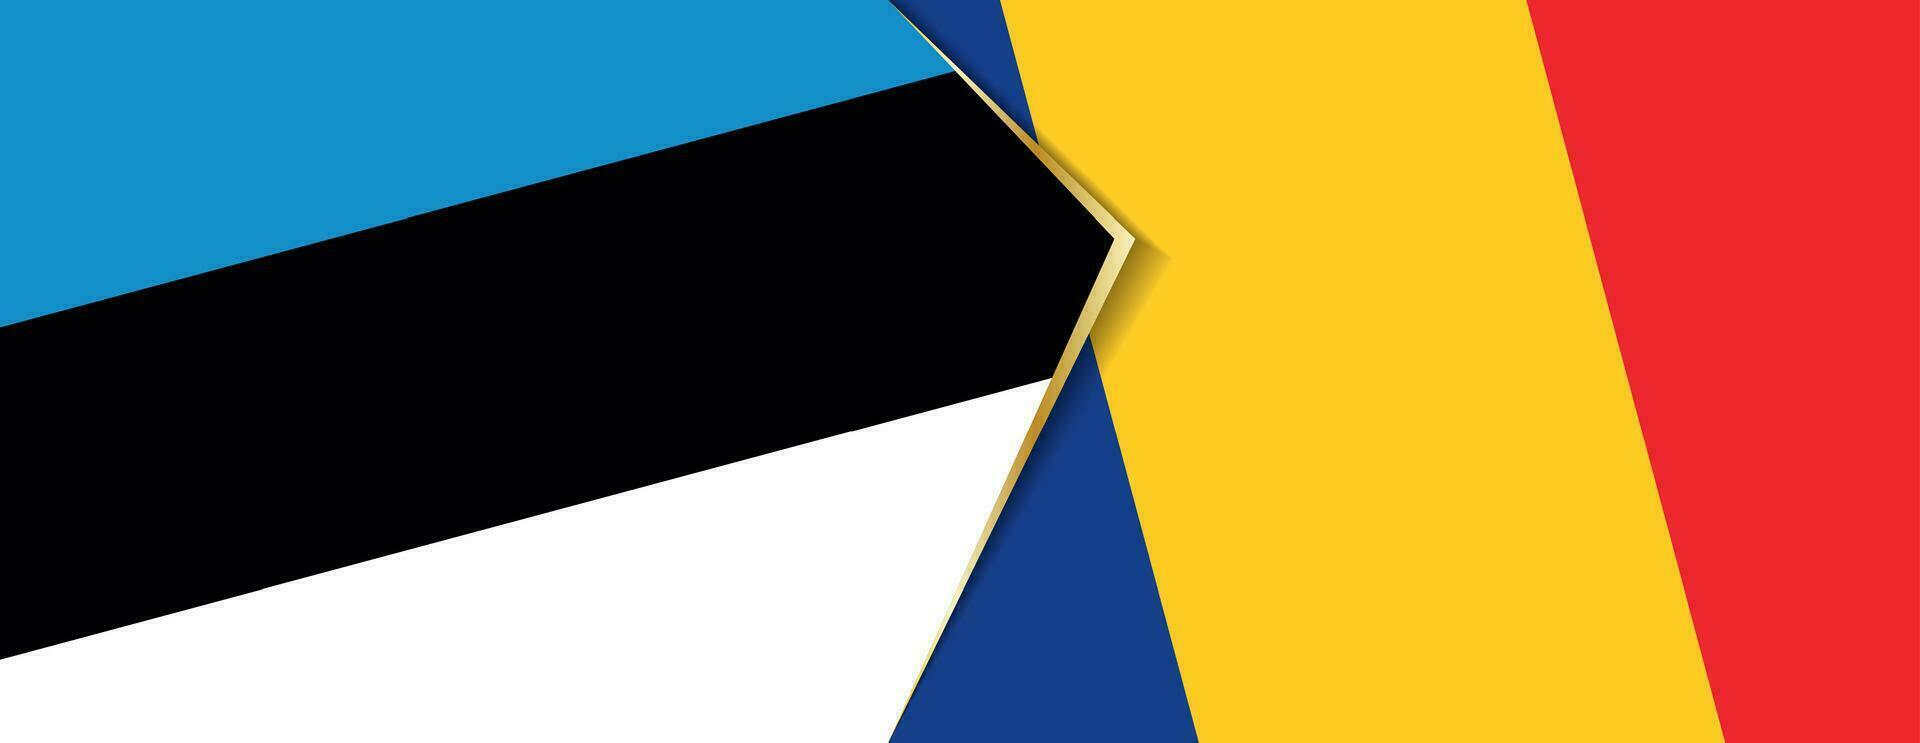 Estland und Rumänien Flaggen, zwei Vektor Flaggen.